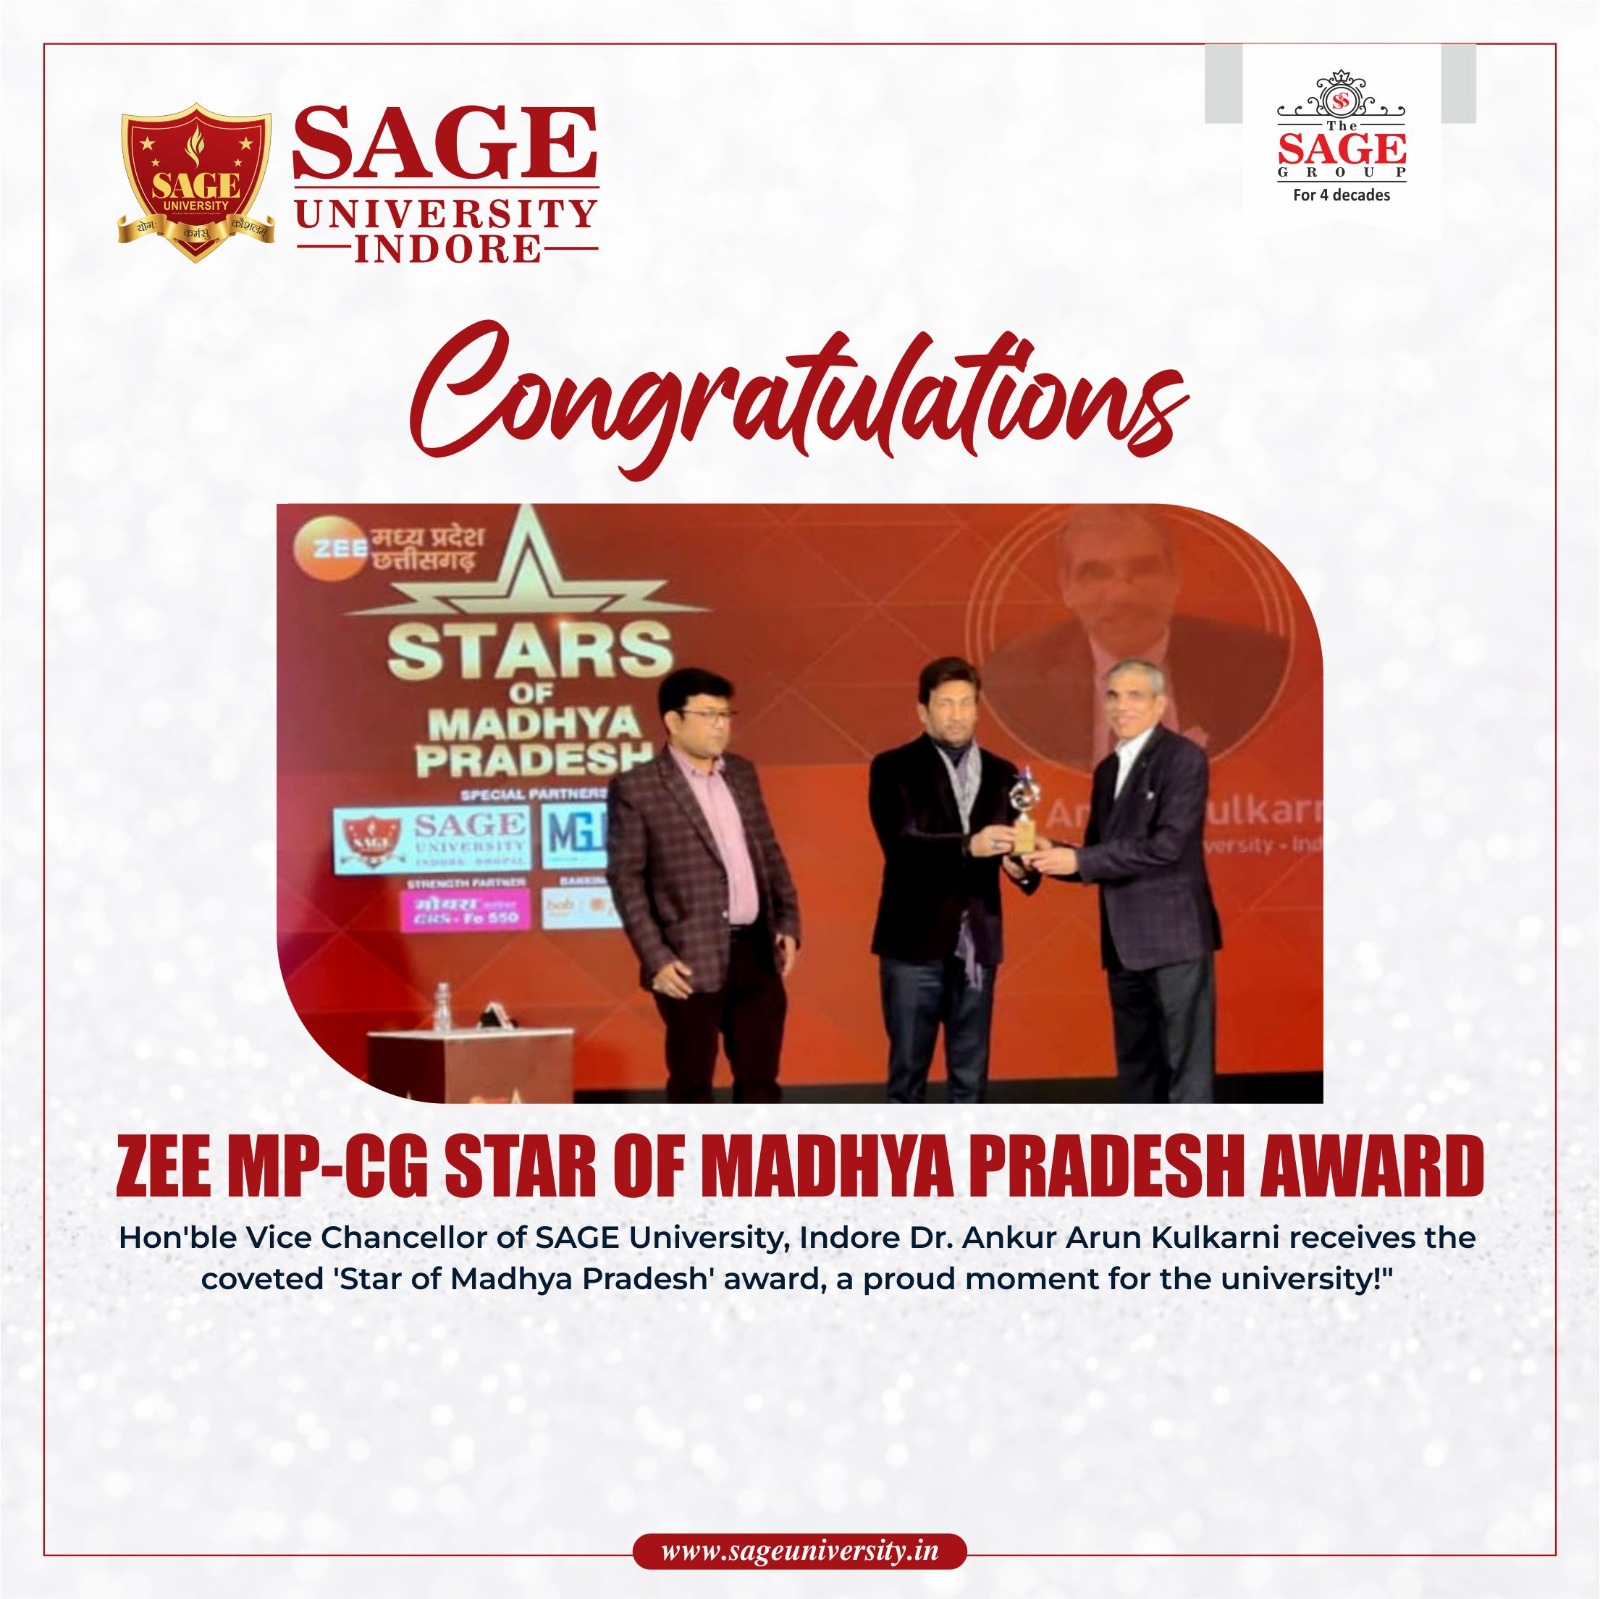 Star of Madhya Pradesh Award